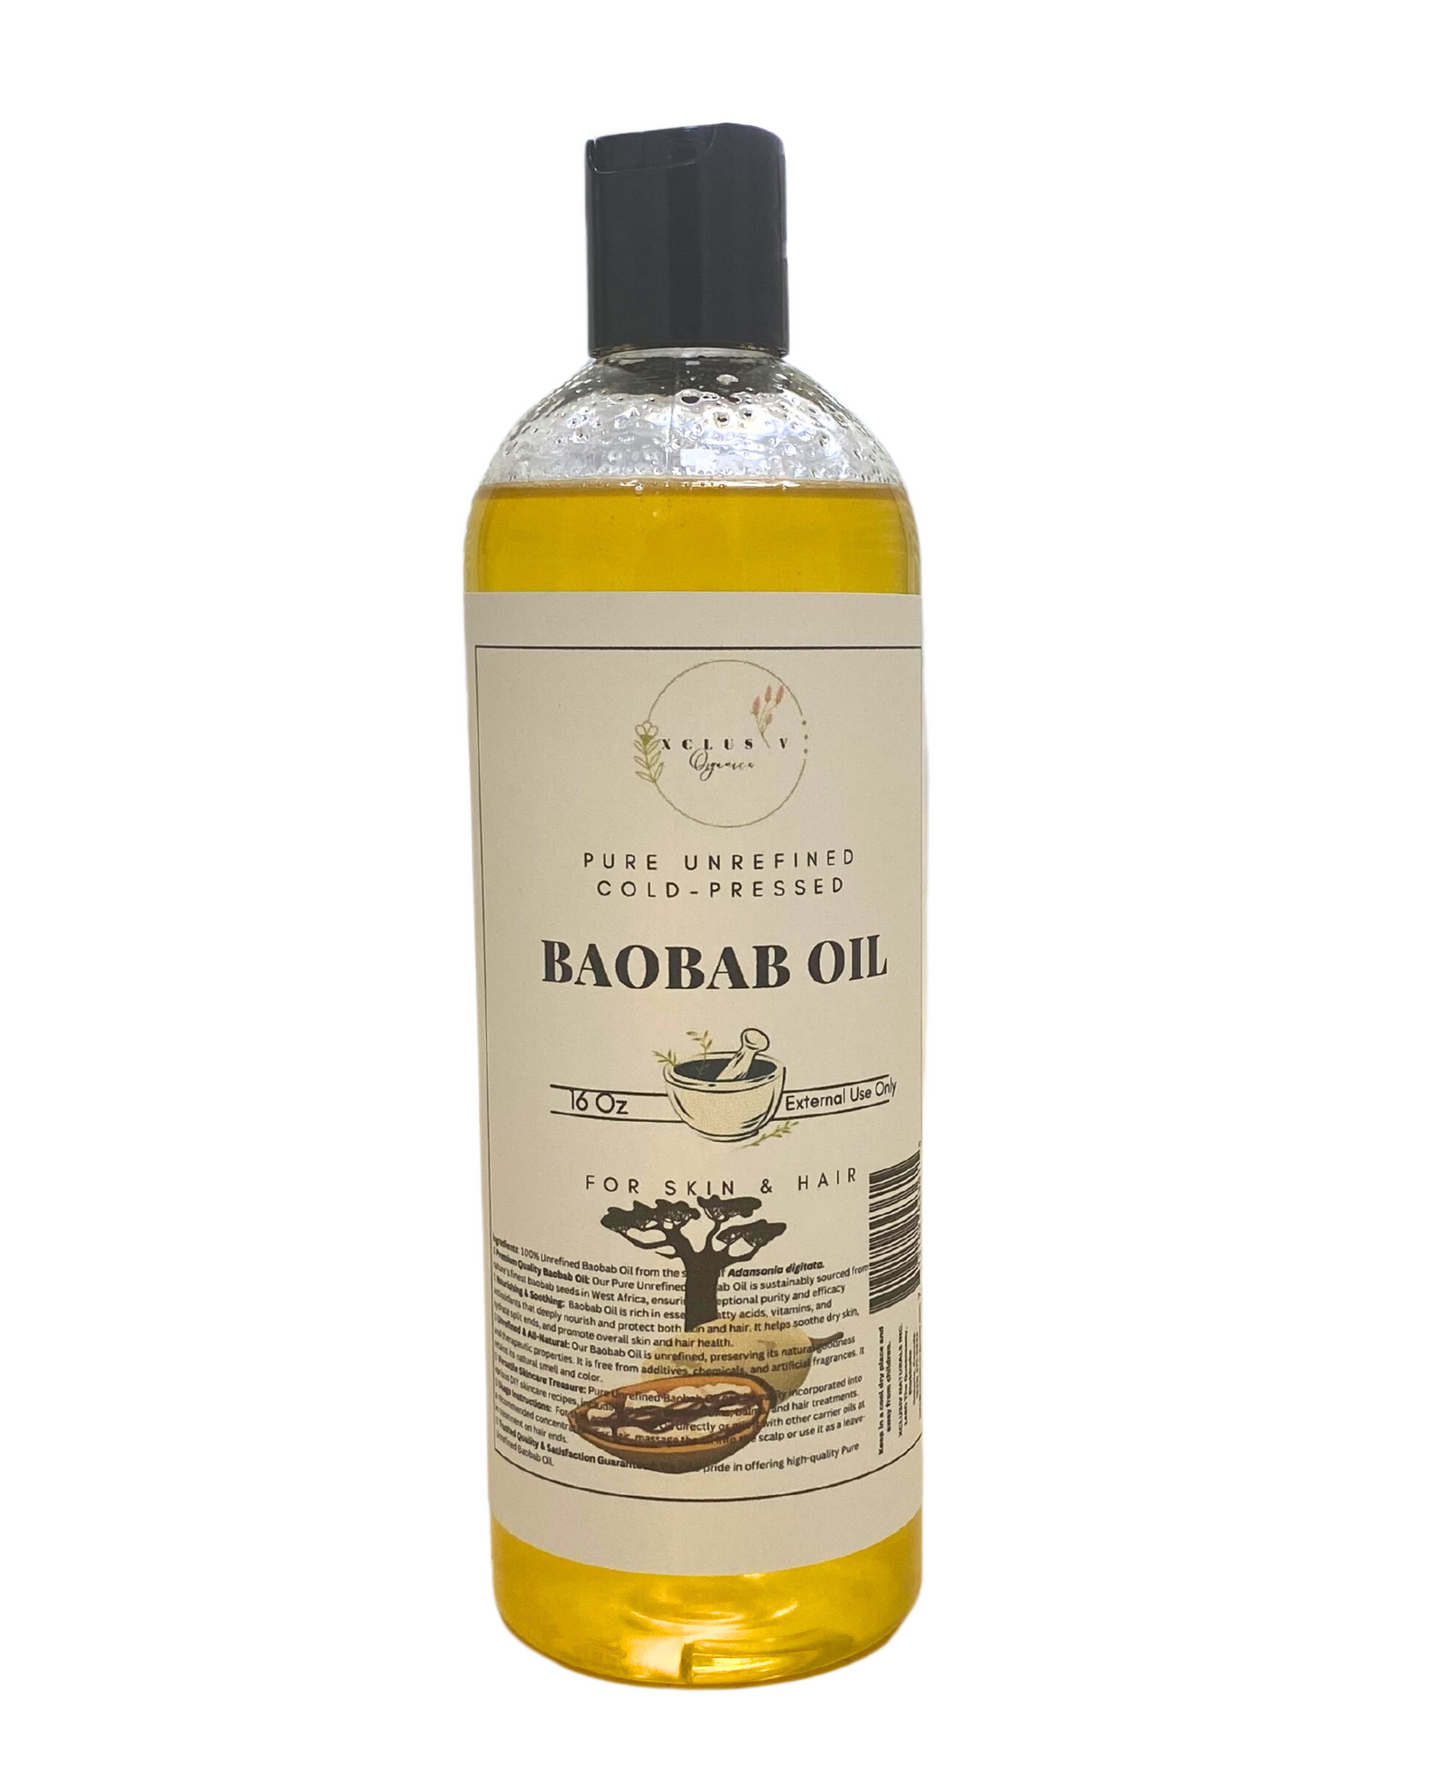 Baobab Oil in a 16oz Bottle